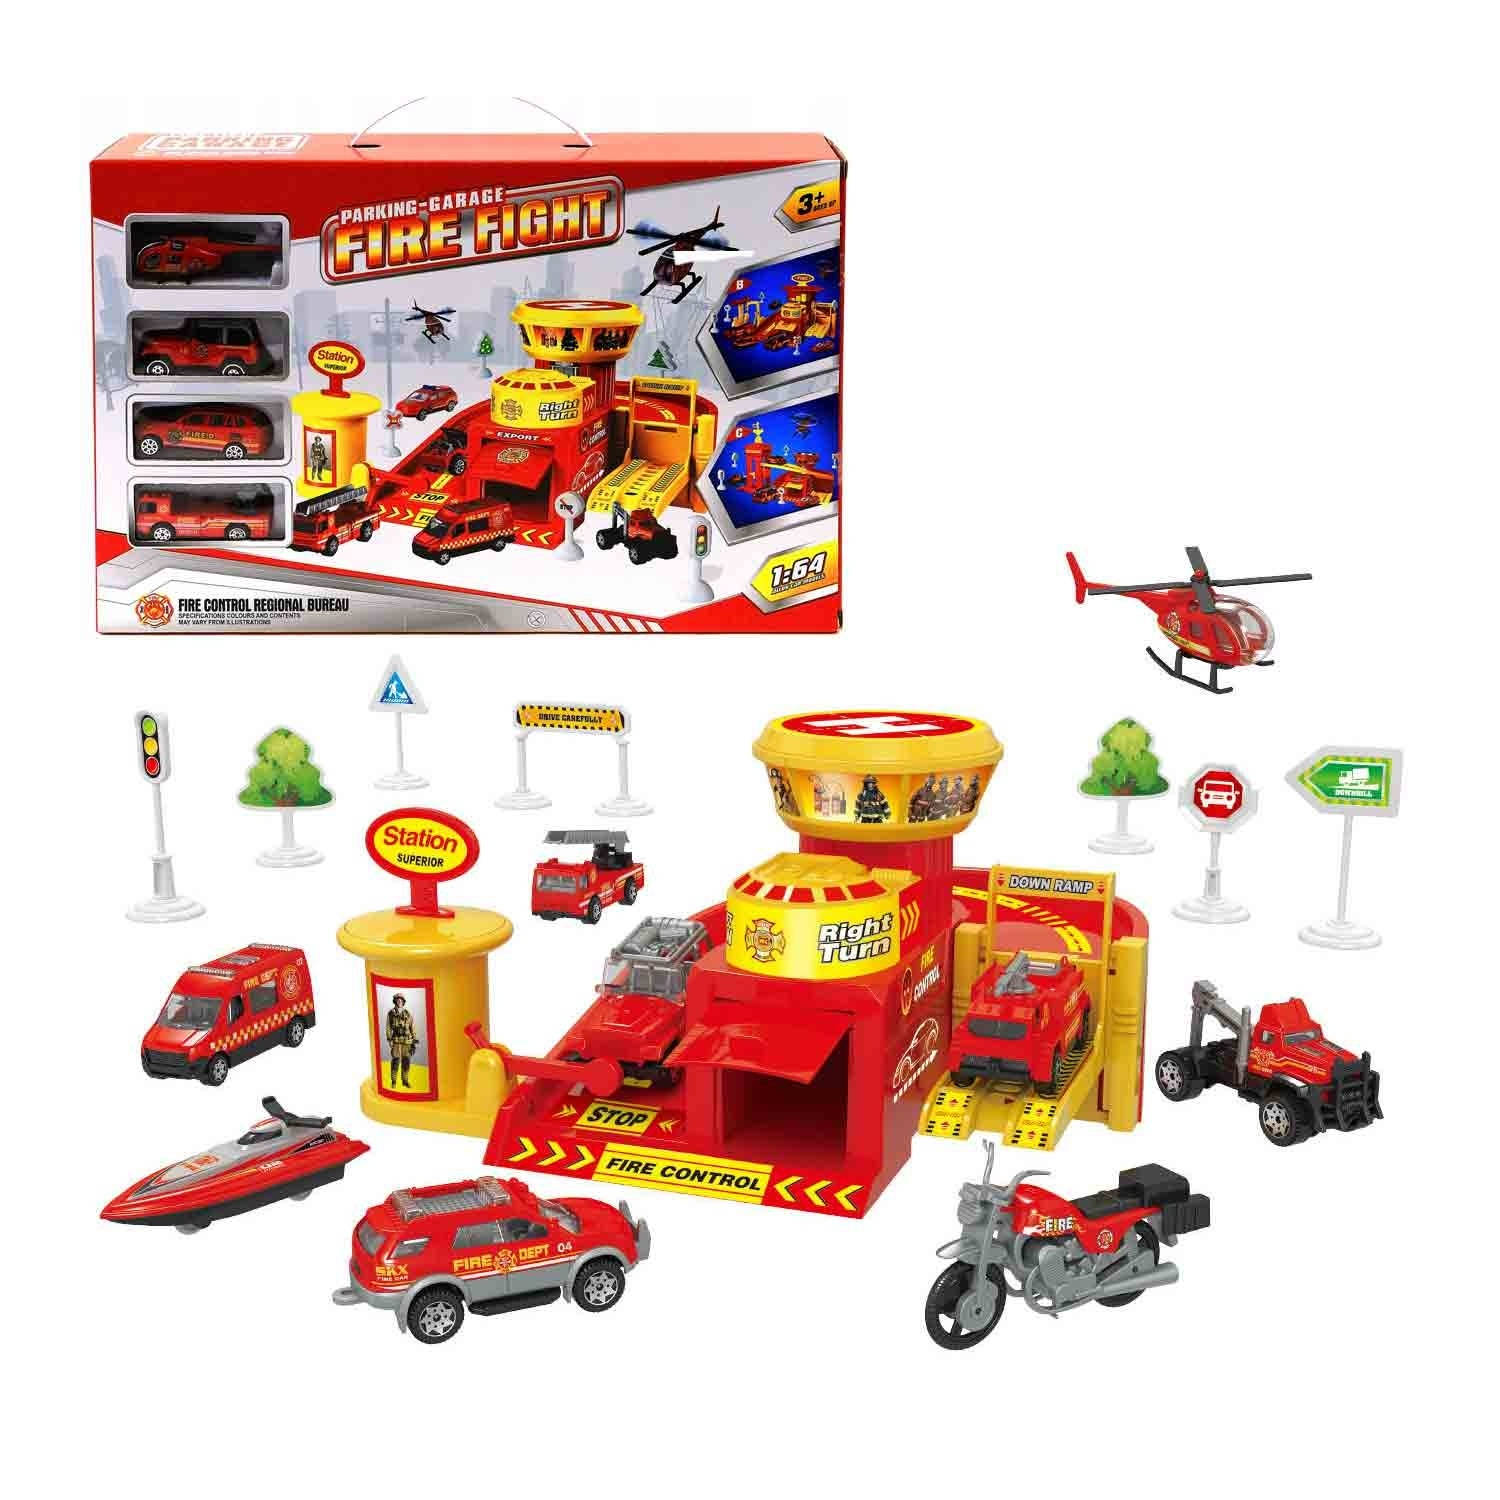 Allerion Speelgoed Garage Brandweer Autogarage Met Brandweer Auto